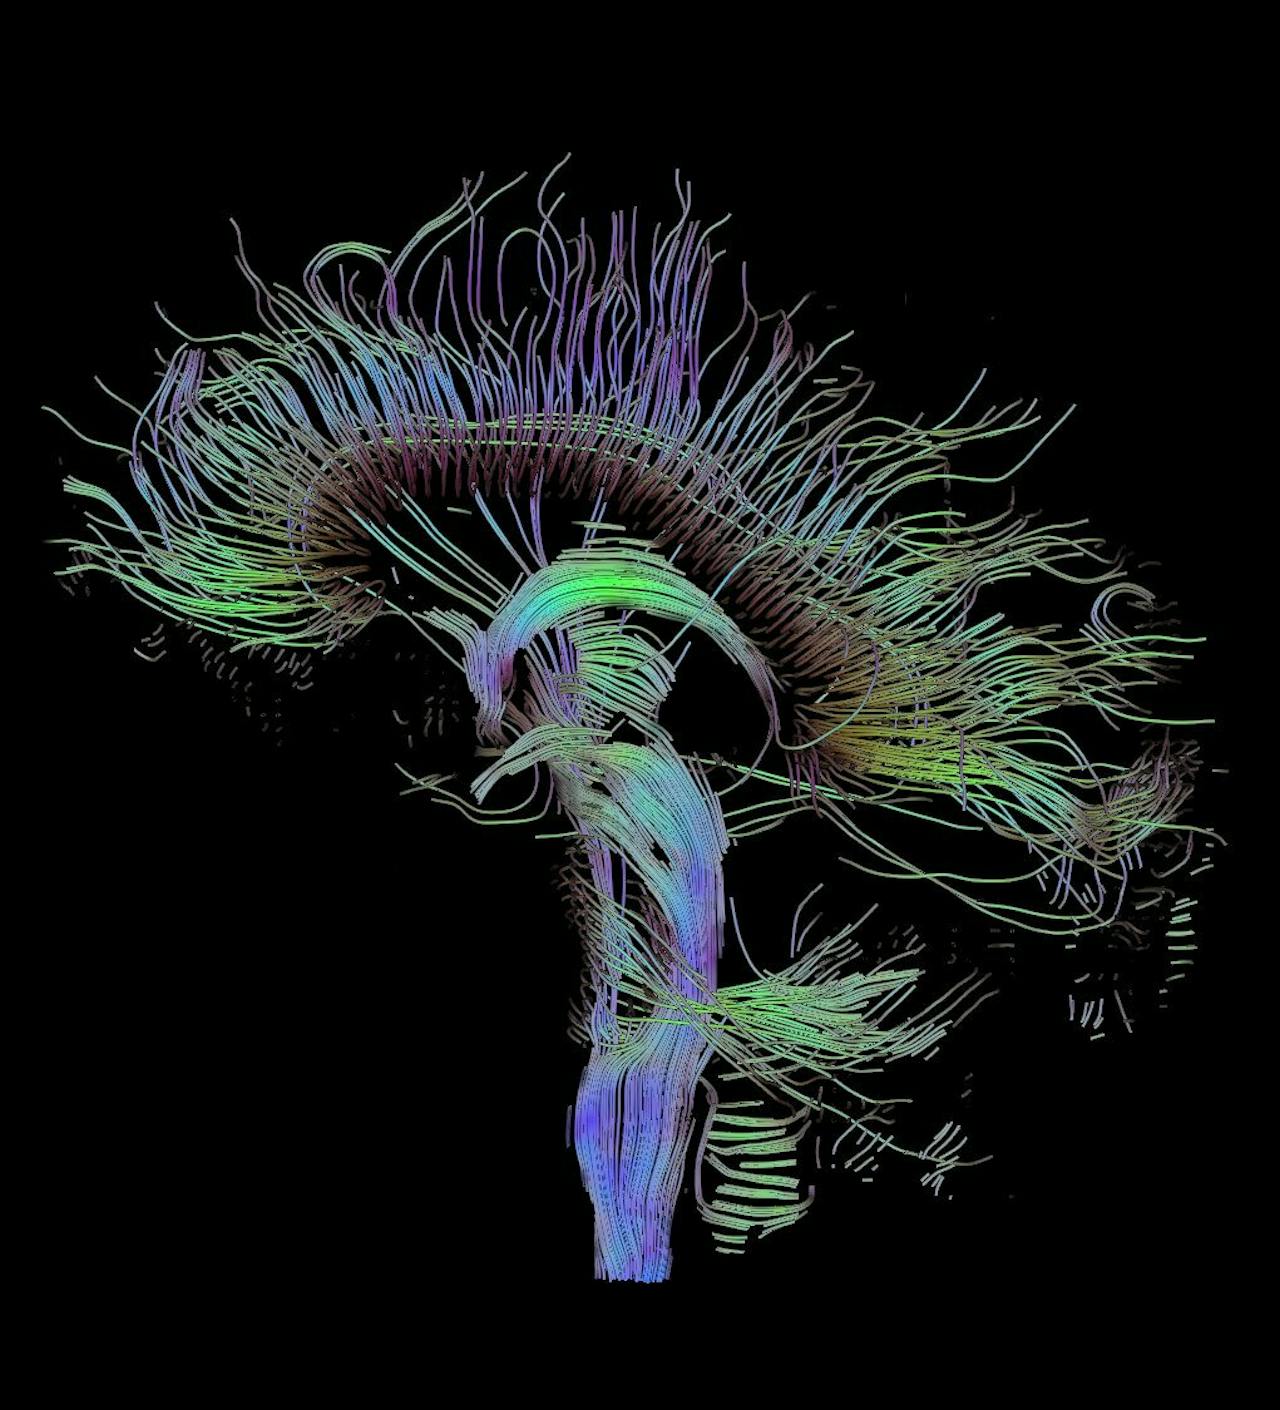 Een DTI-scan, een speciaal soort hersenscan die de verbindingen tussen delen van de hersenen weergeeft.